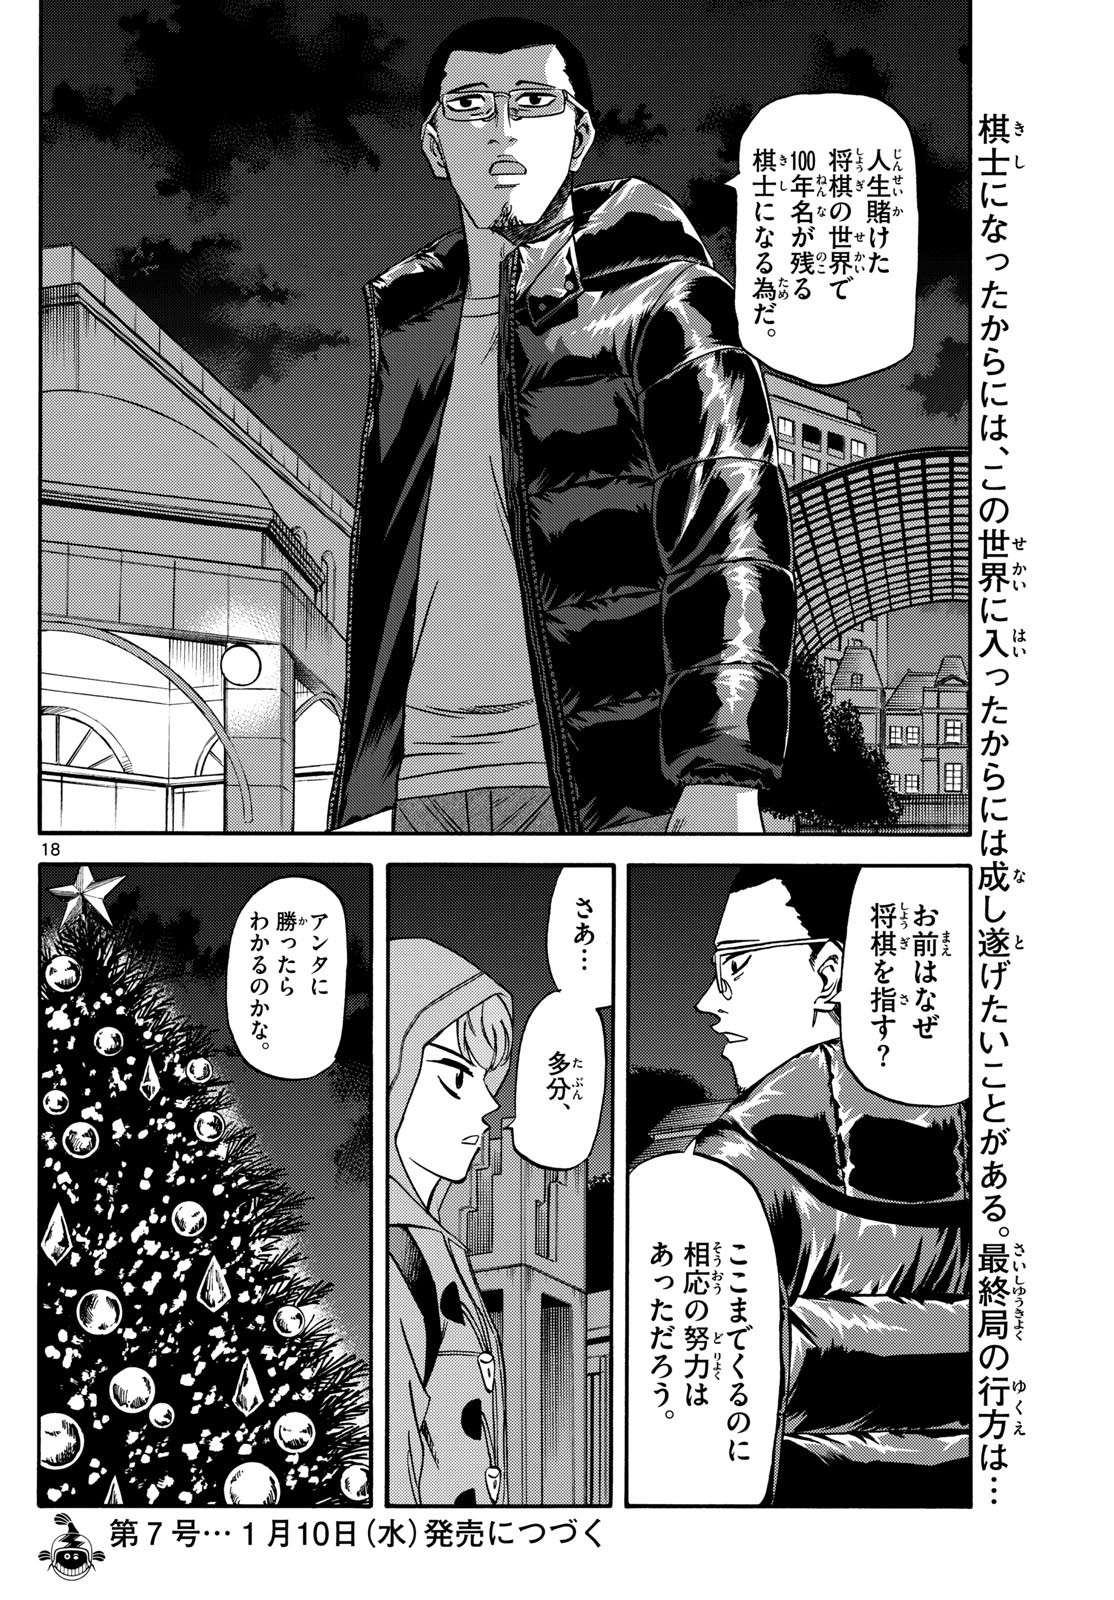 Ryu-to-Ichigo - Chapter 173 - Page 18